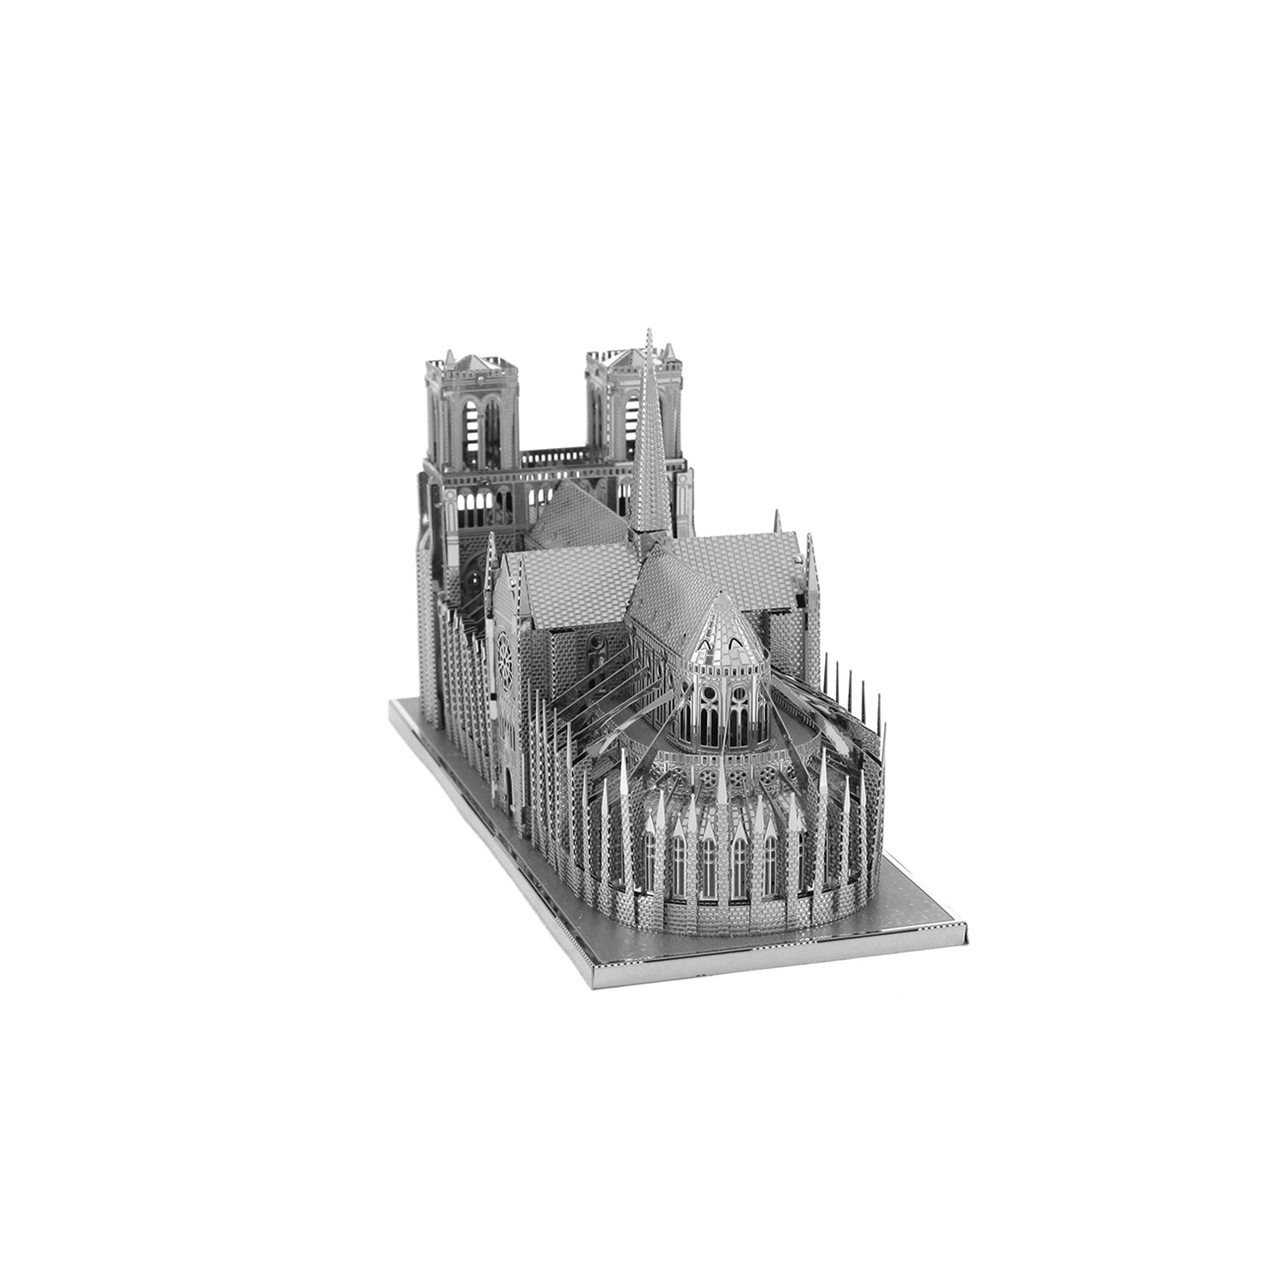 Notre Dame de Paris Iconx 3D Laser Cut Metal Model Kit Fascinations ICX003 